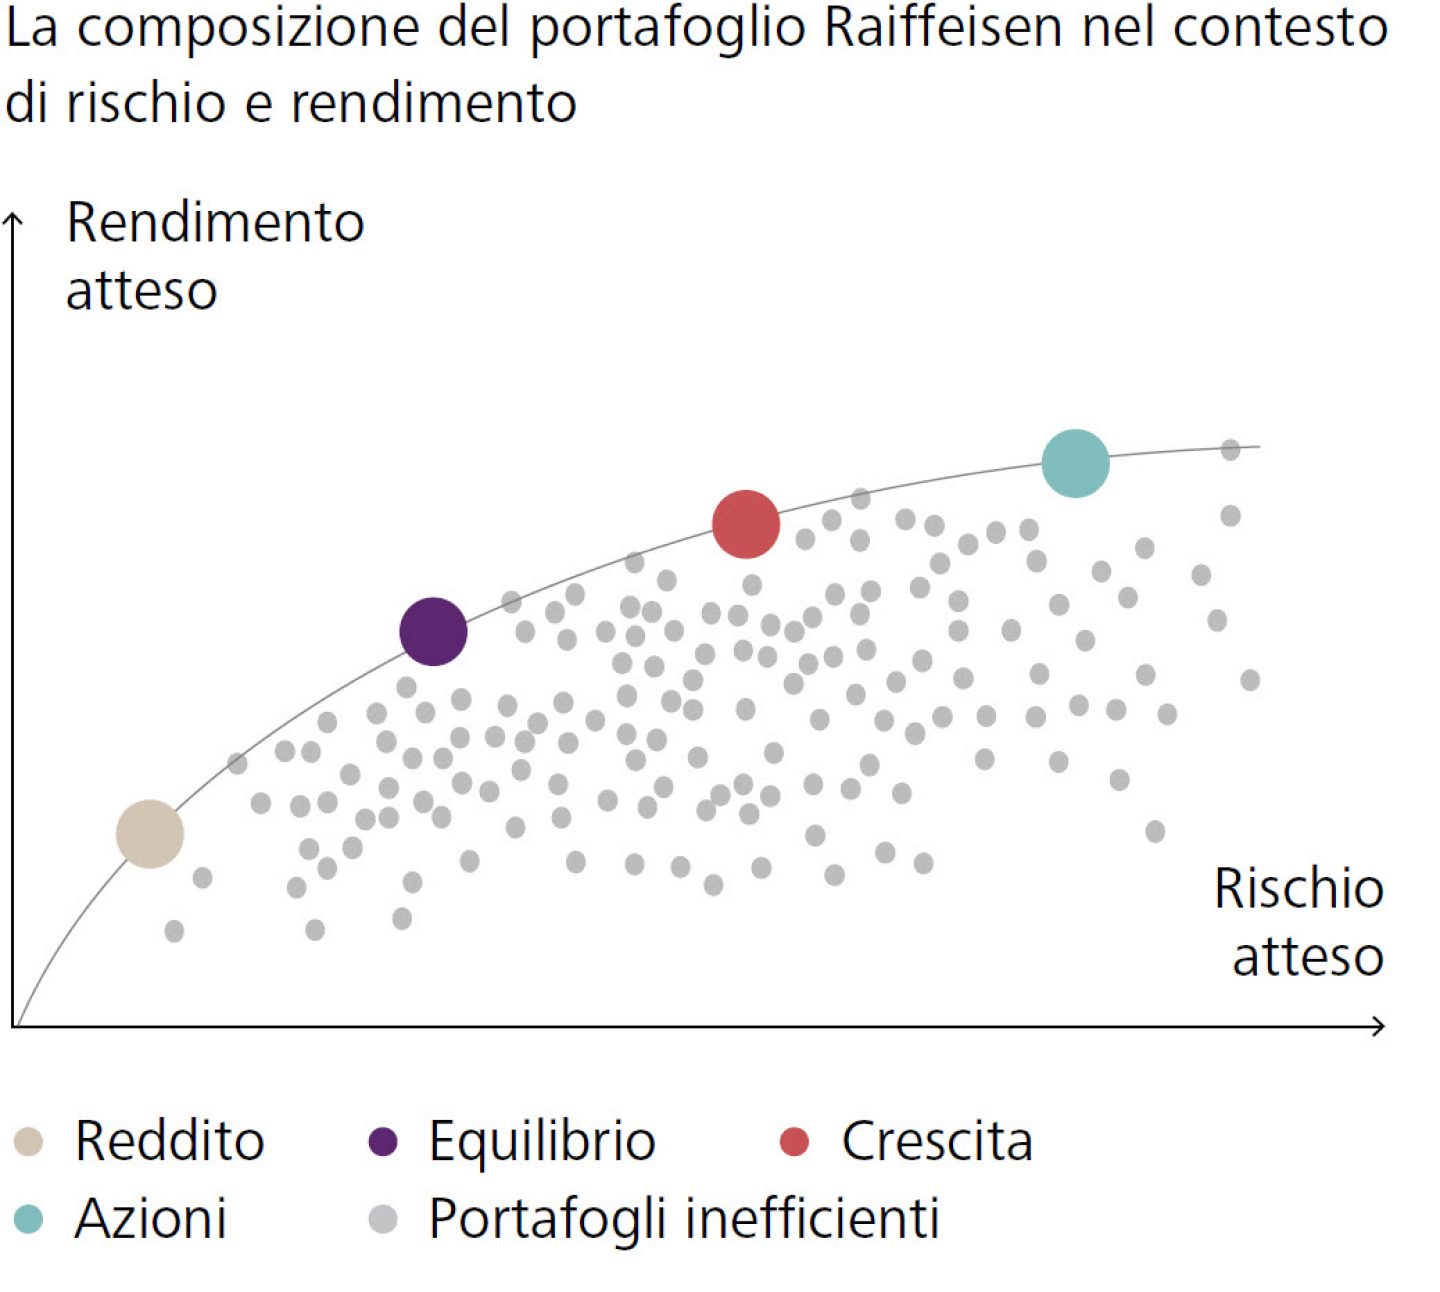 La composizione del portafoglio Raiffeisen nel contesto di rischio e rendimento